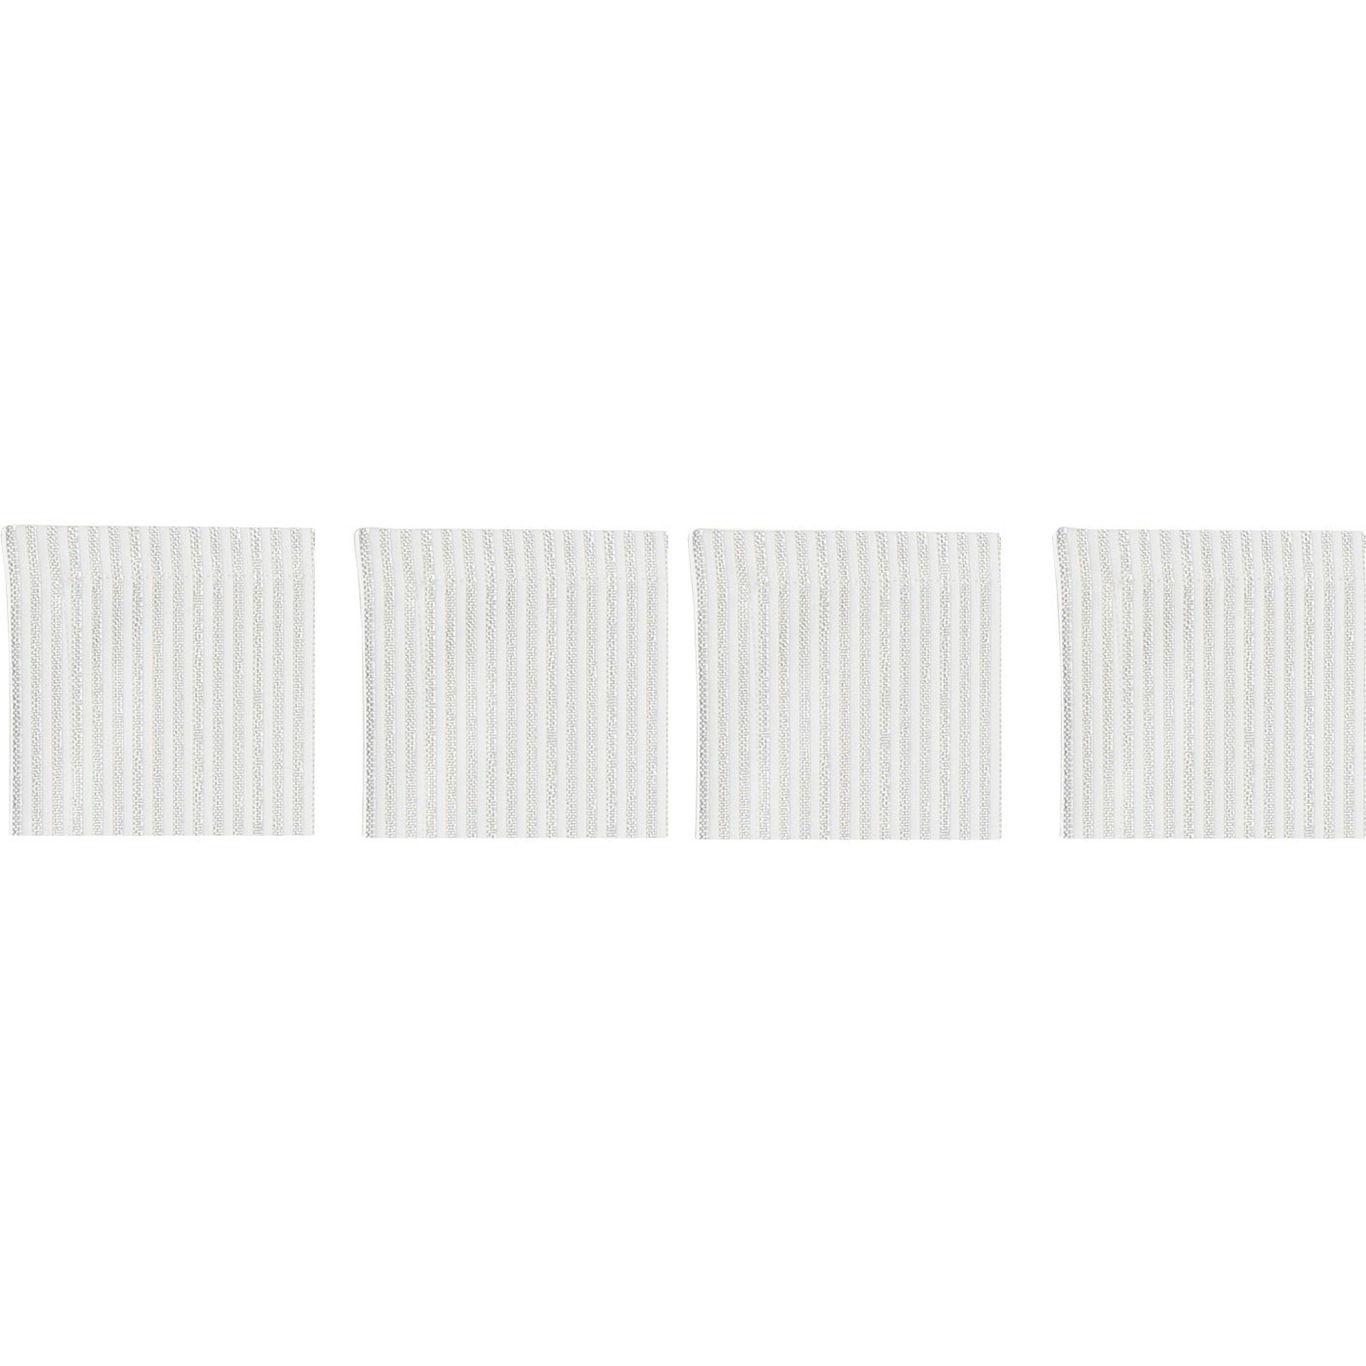 Narrow Stripe Lasinaluset 10x10 cm 4-pakkaus, Valkoinen